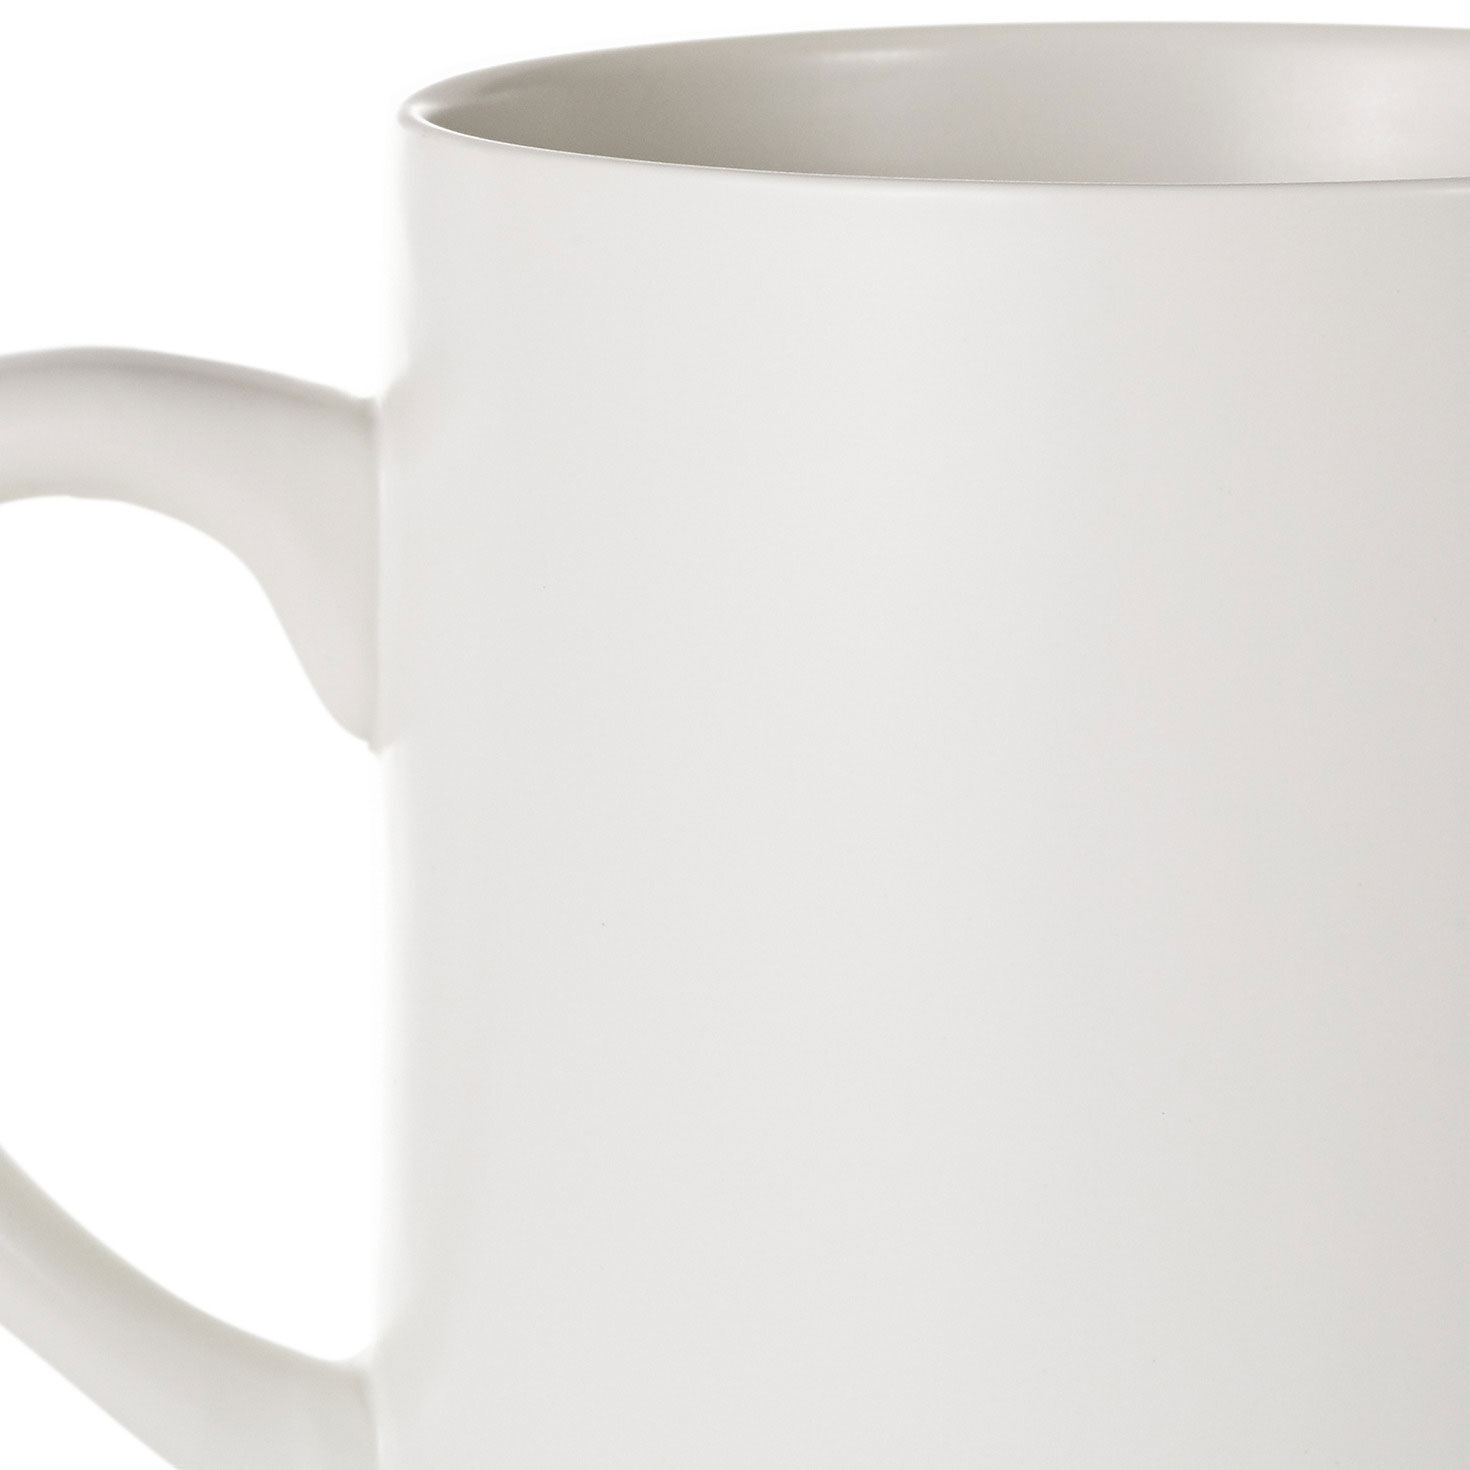 I Like Big Mugs Funny Jumbo Mug, 69 oz. for only USD 26.99 | Hallmark